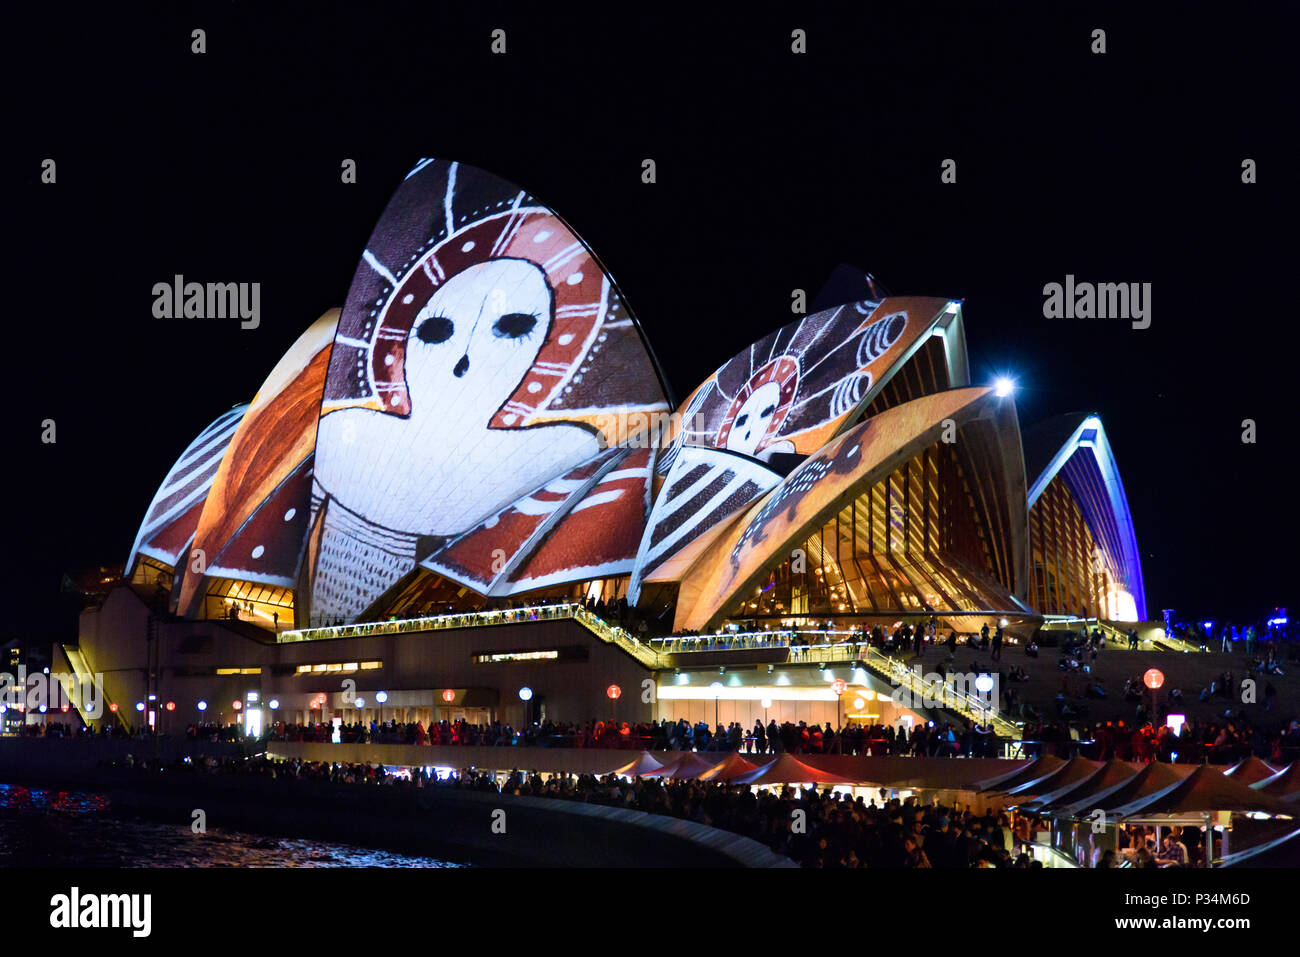 Des modèles de projection de lumière colorée sur Sydney Opera House de Sydney Vivid Festival, New South Wales, Australie Banque D'Images